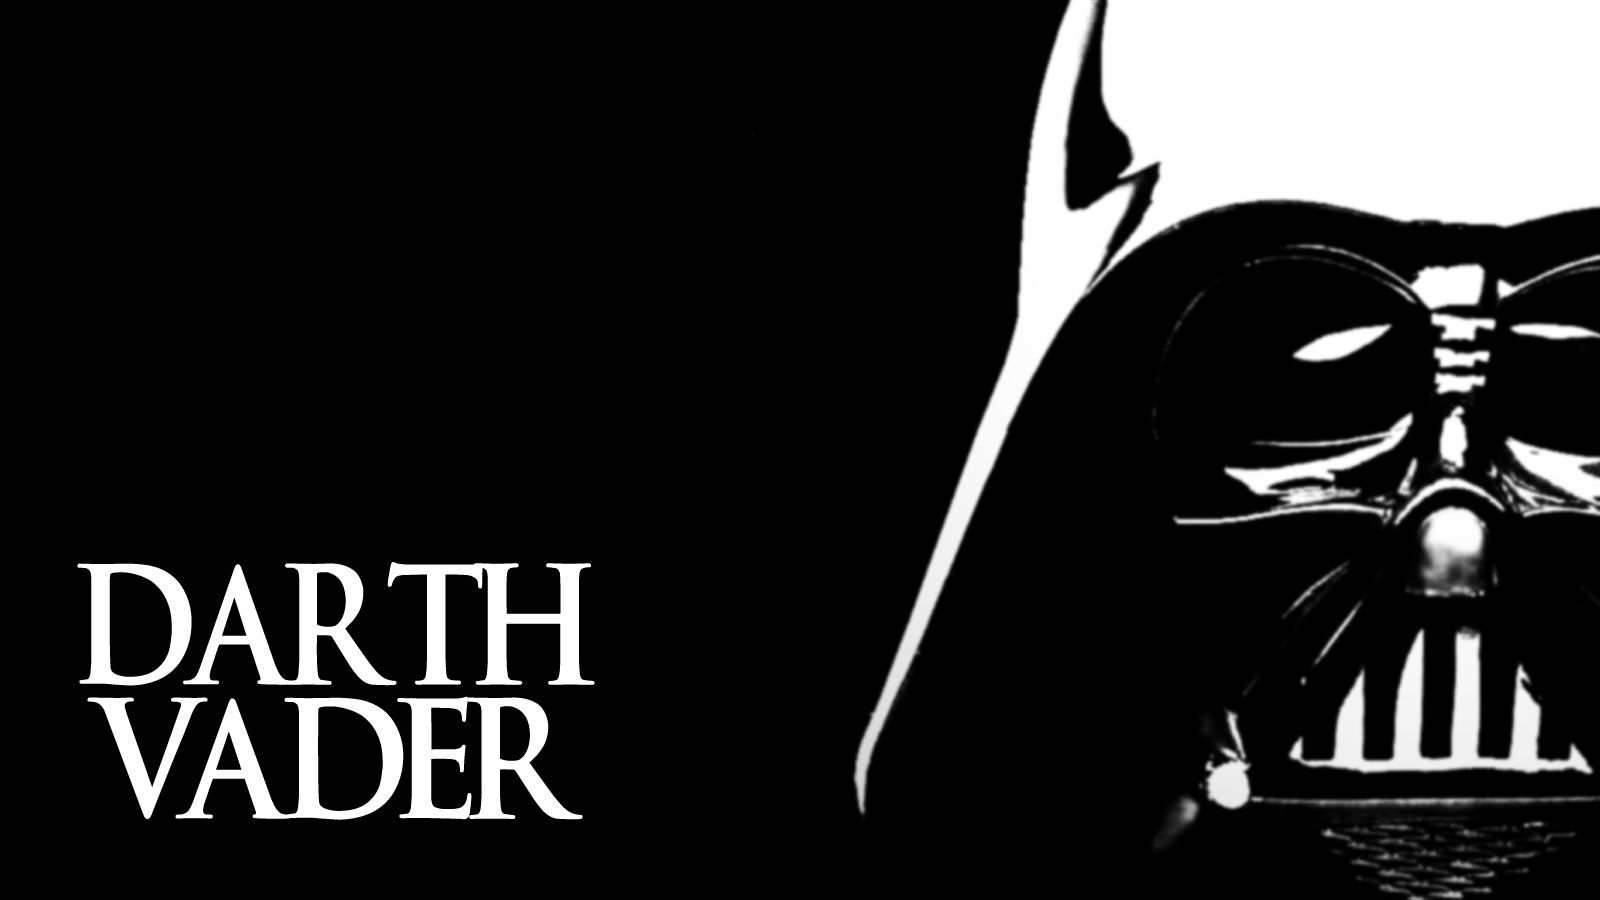 Darth Vader Wallpaper by Artillusion on DeviantArt